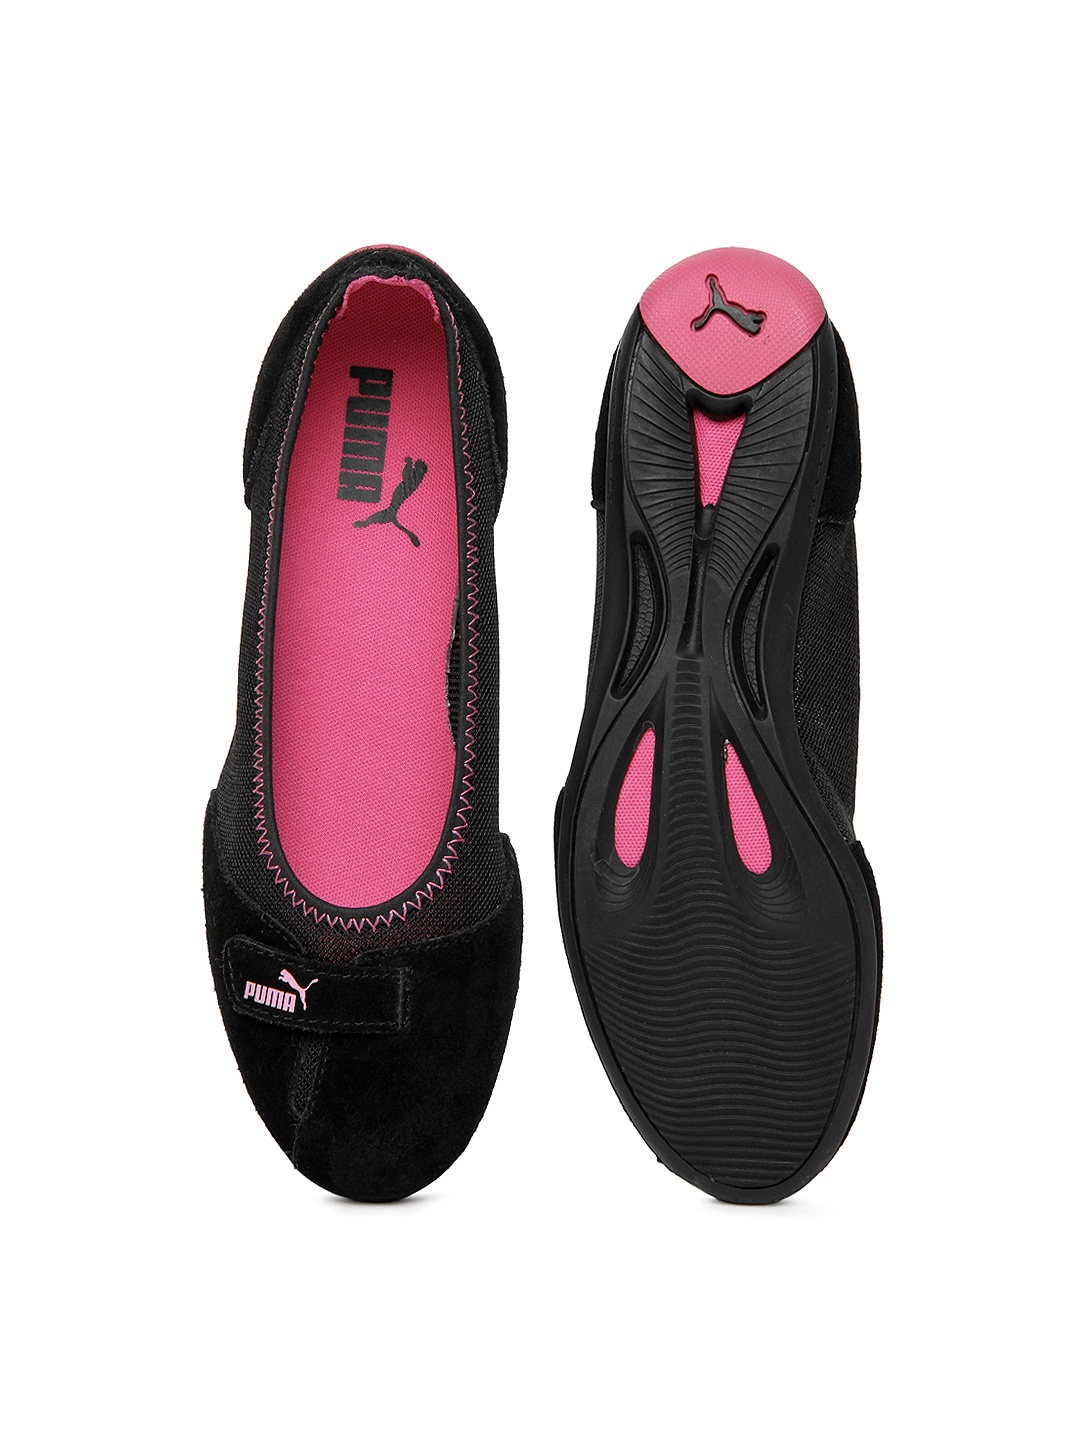 puma flat shoes online, Puma Shoes 